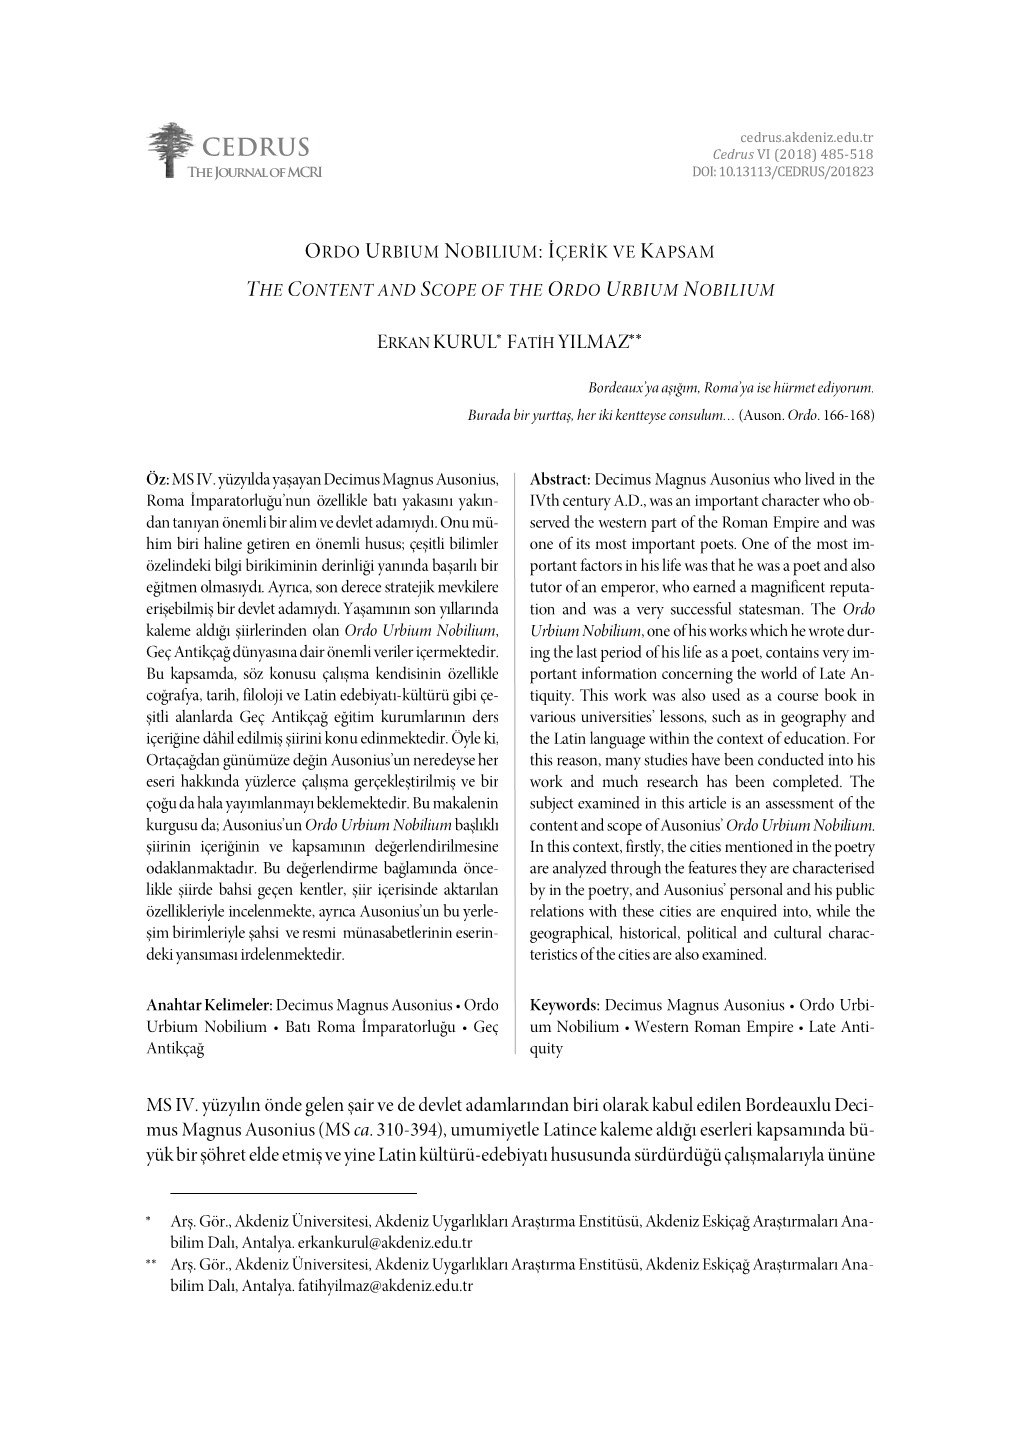 The Content and Scope of the Ordo Urbium Nobilium